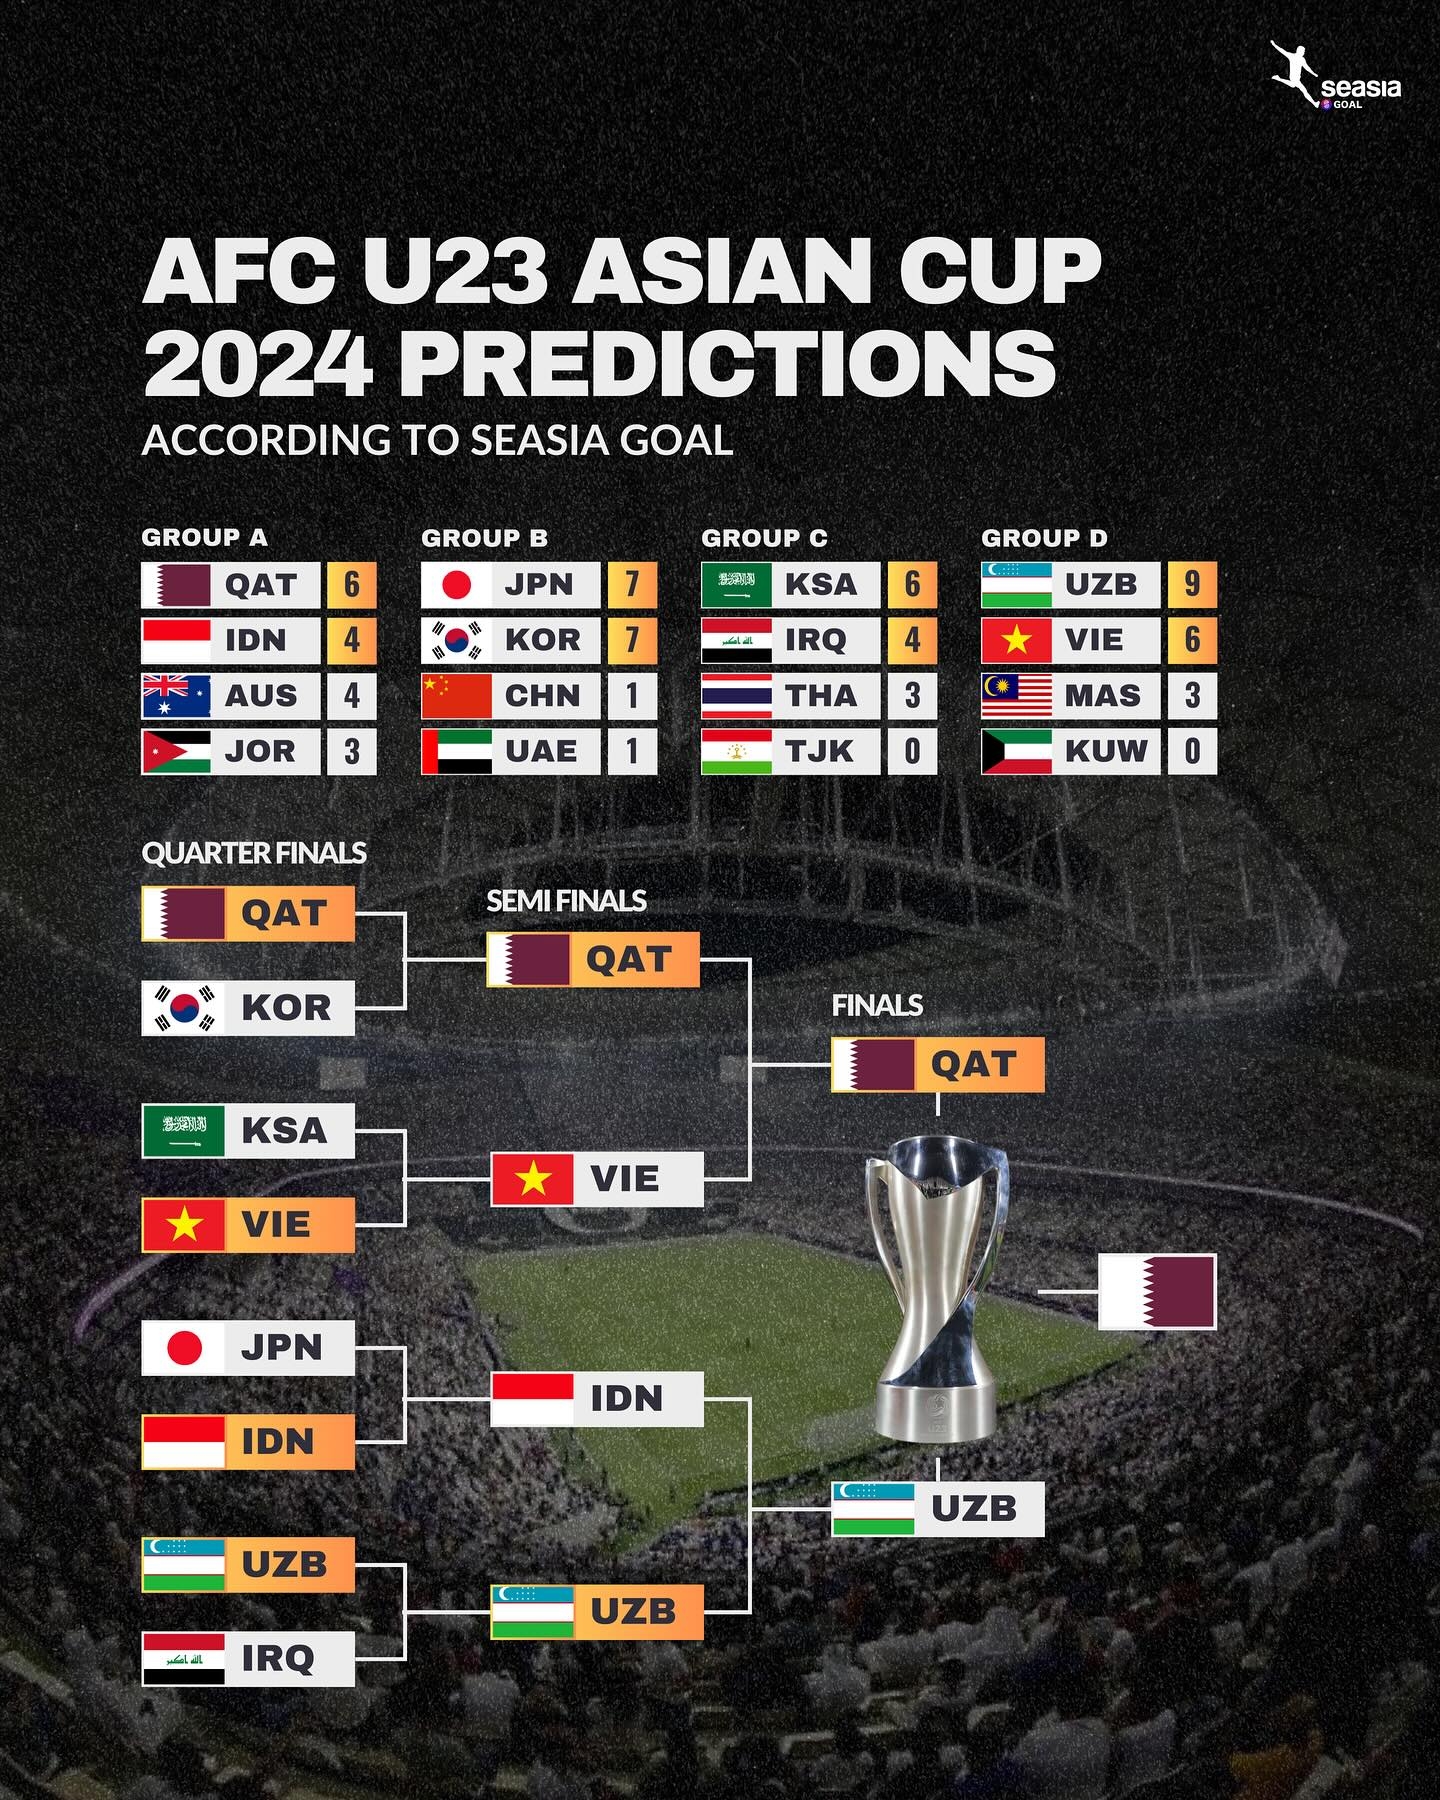 Nhật Bản thua sốc ở giải châu Á, U23 Việt Nam đội sổ ở 1 thống kê - ảnh 4